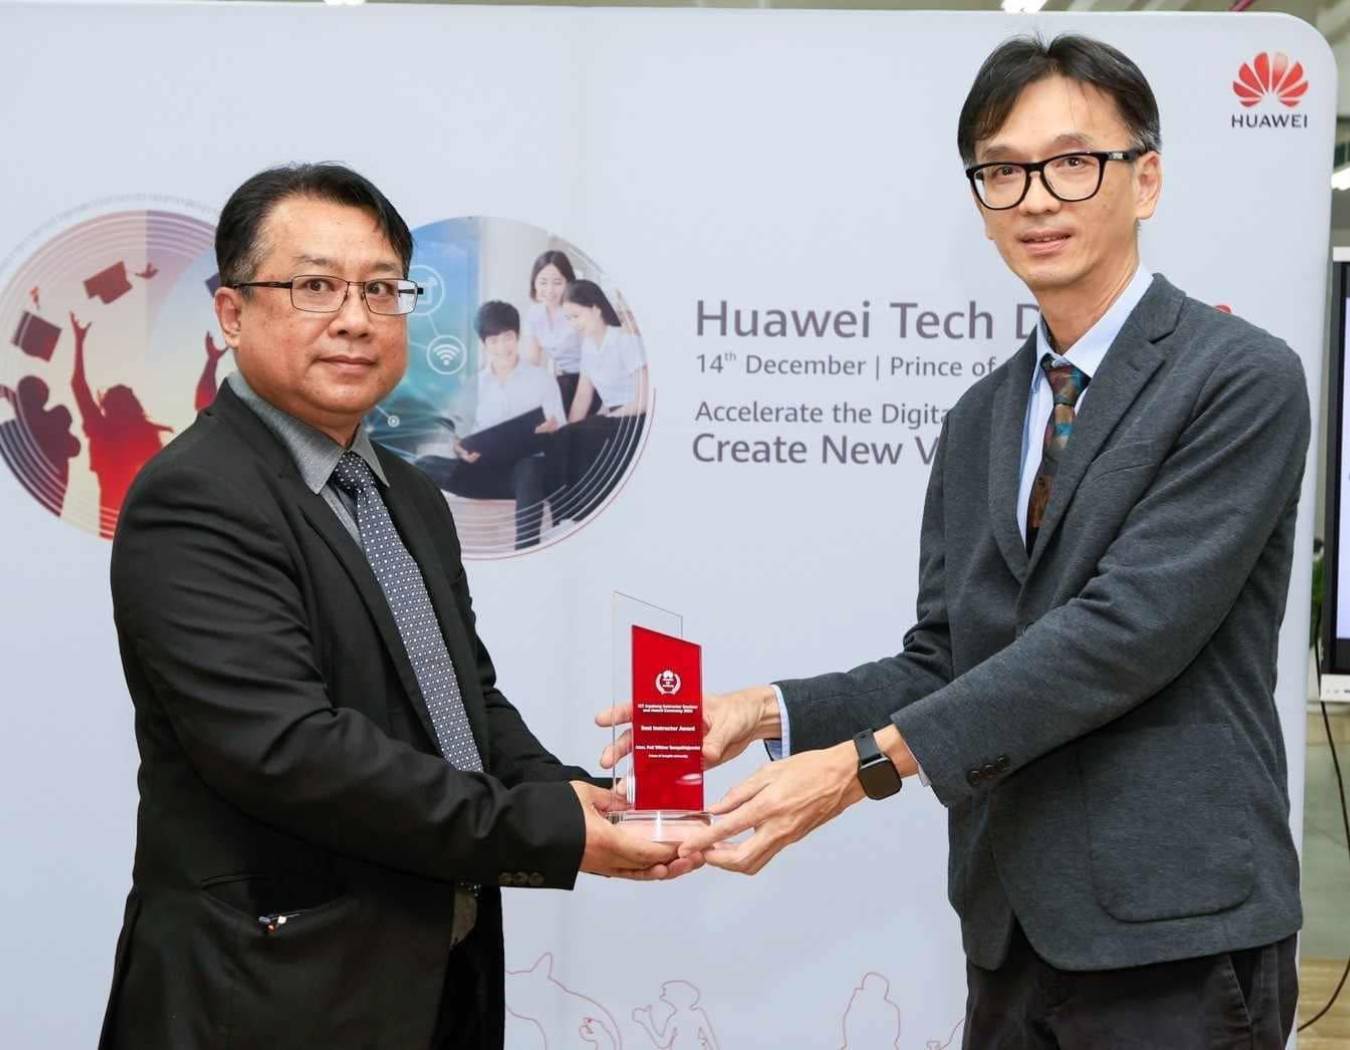 ได้รับรางวัล Best Instructor Award  จากบริษัท หัวเว่ย เทคโนโลยี่ (ประเทศไทย) จำกัด